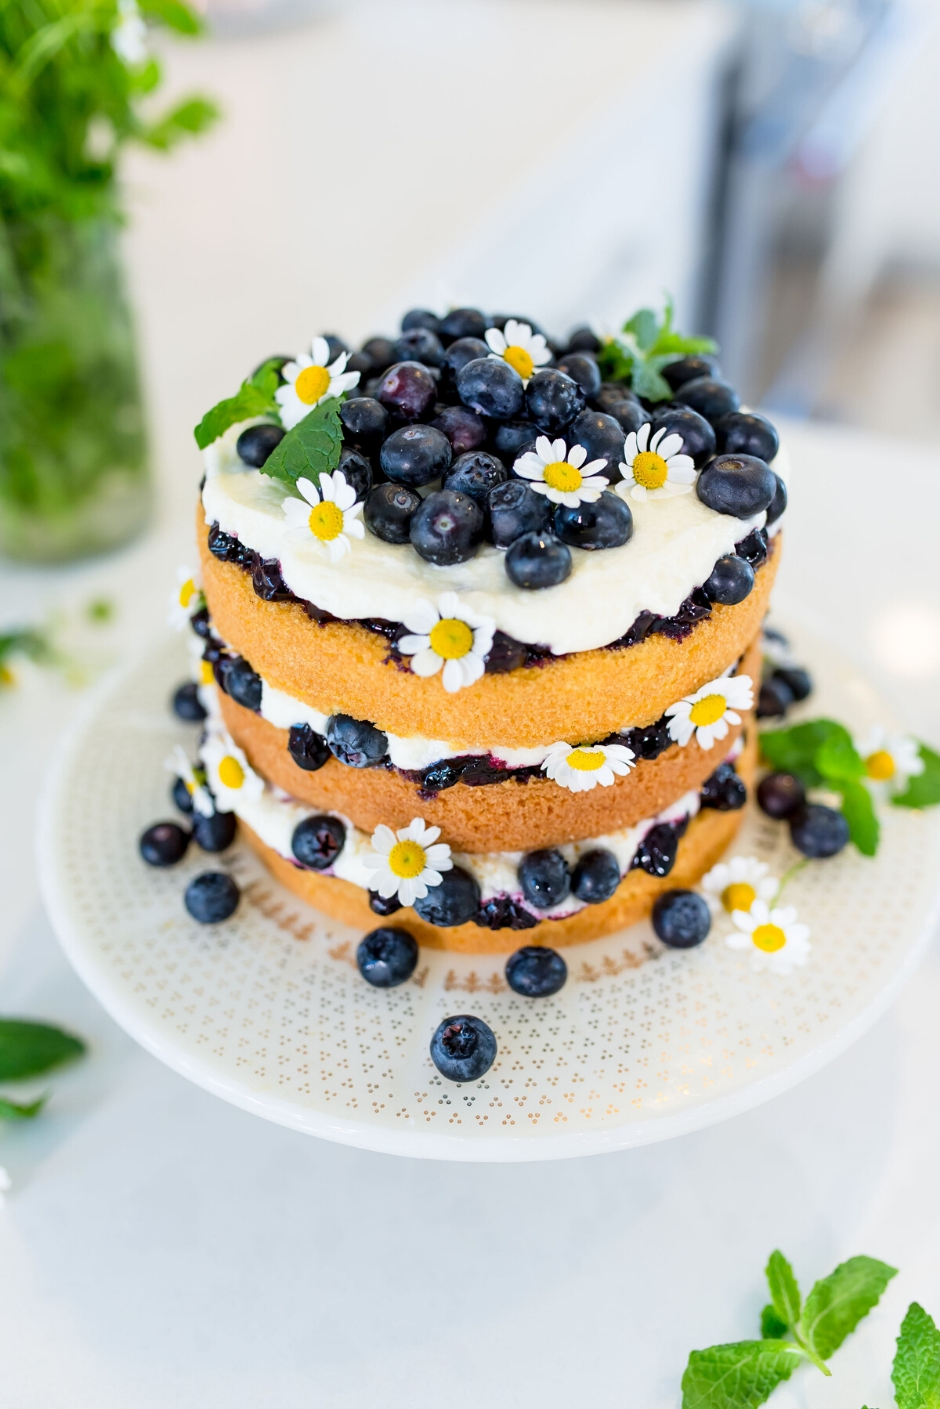 Customised Blueberry Cake | Cake decorating designs, Homemade birthday cakes,  Blueberry cake